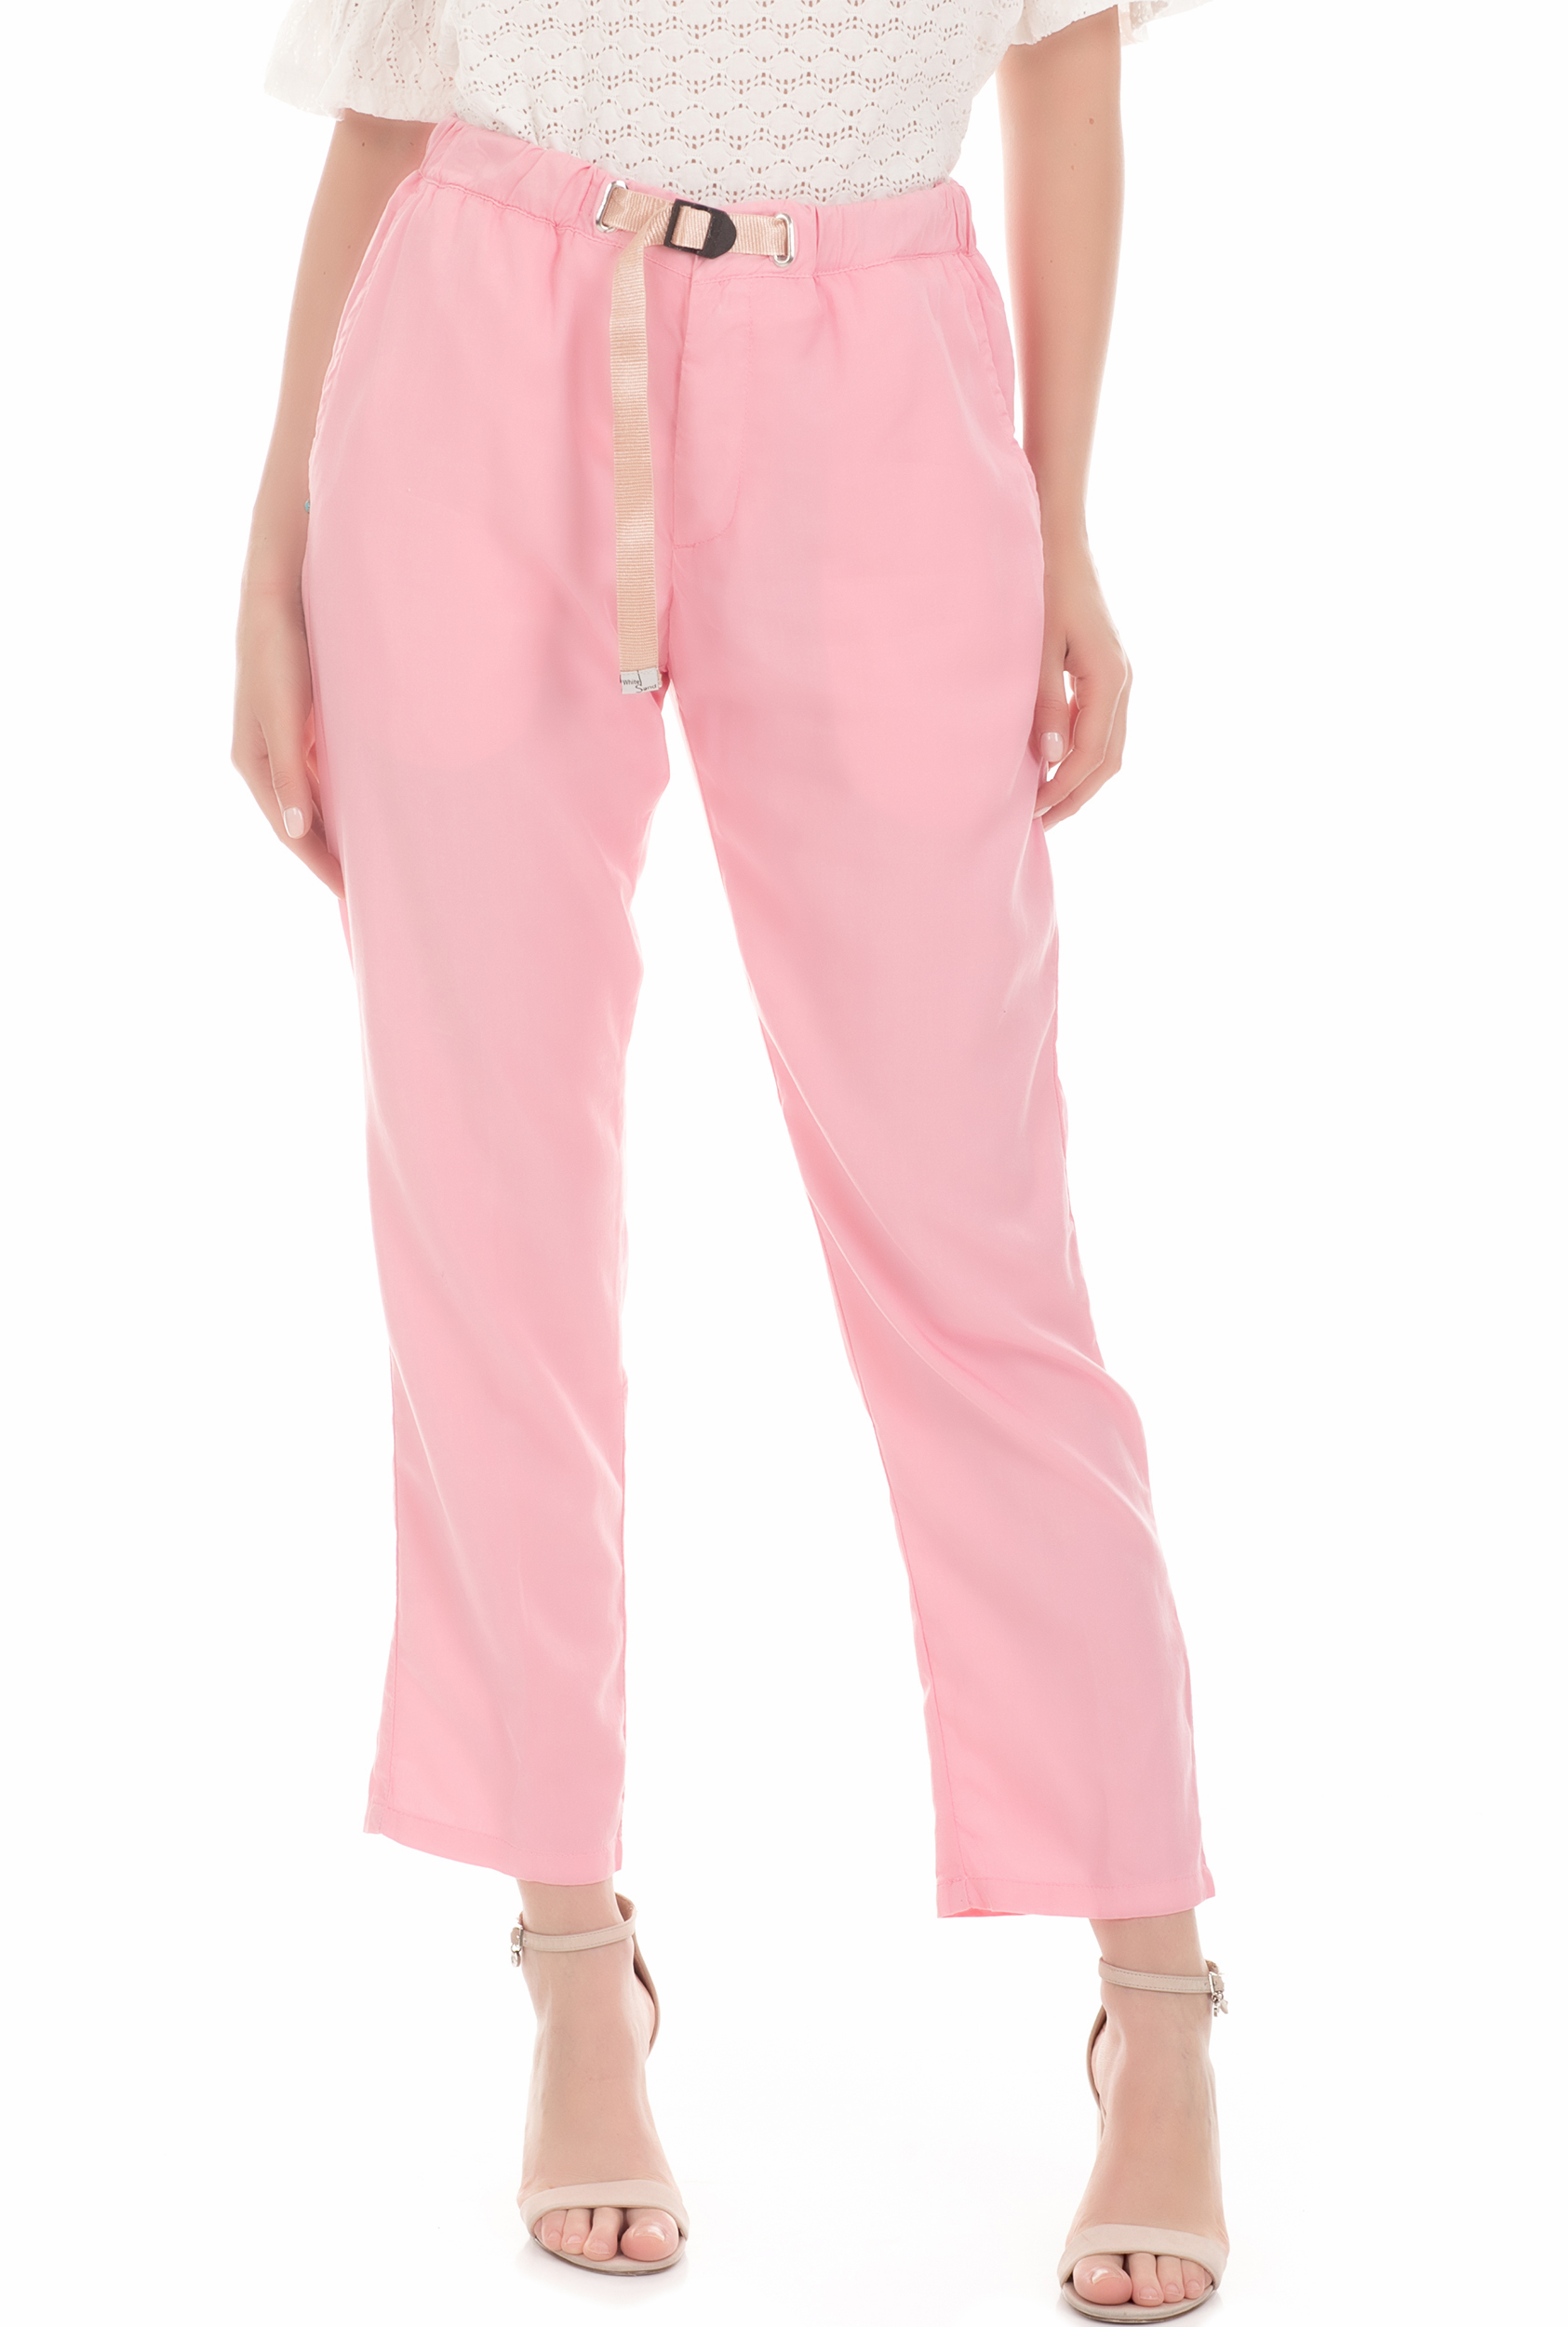 Γυναικεία/Ρούχα/Παντελόνια/Cropped WHITE SAND - Γυναικείο παντελόνι WHITE SAND ροζ